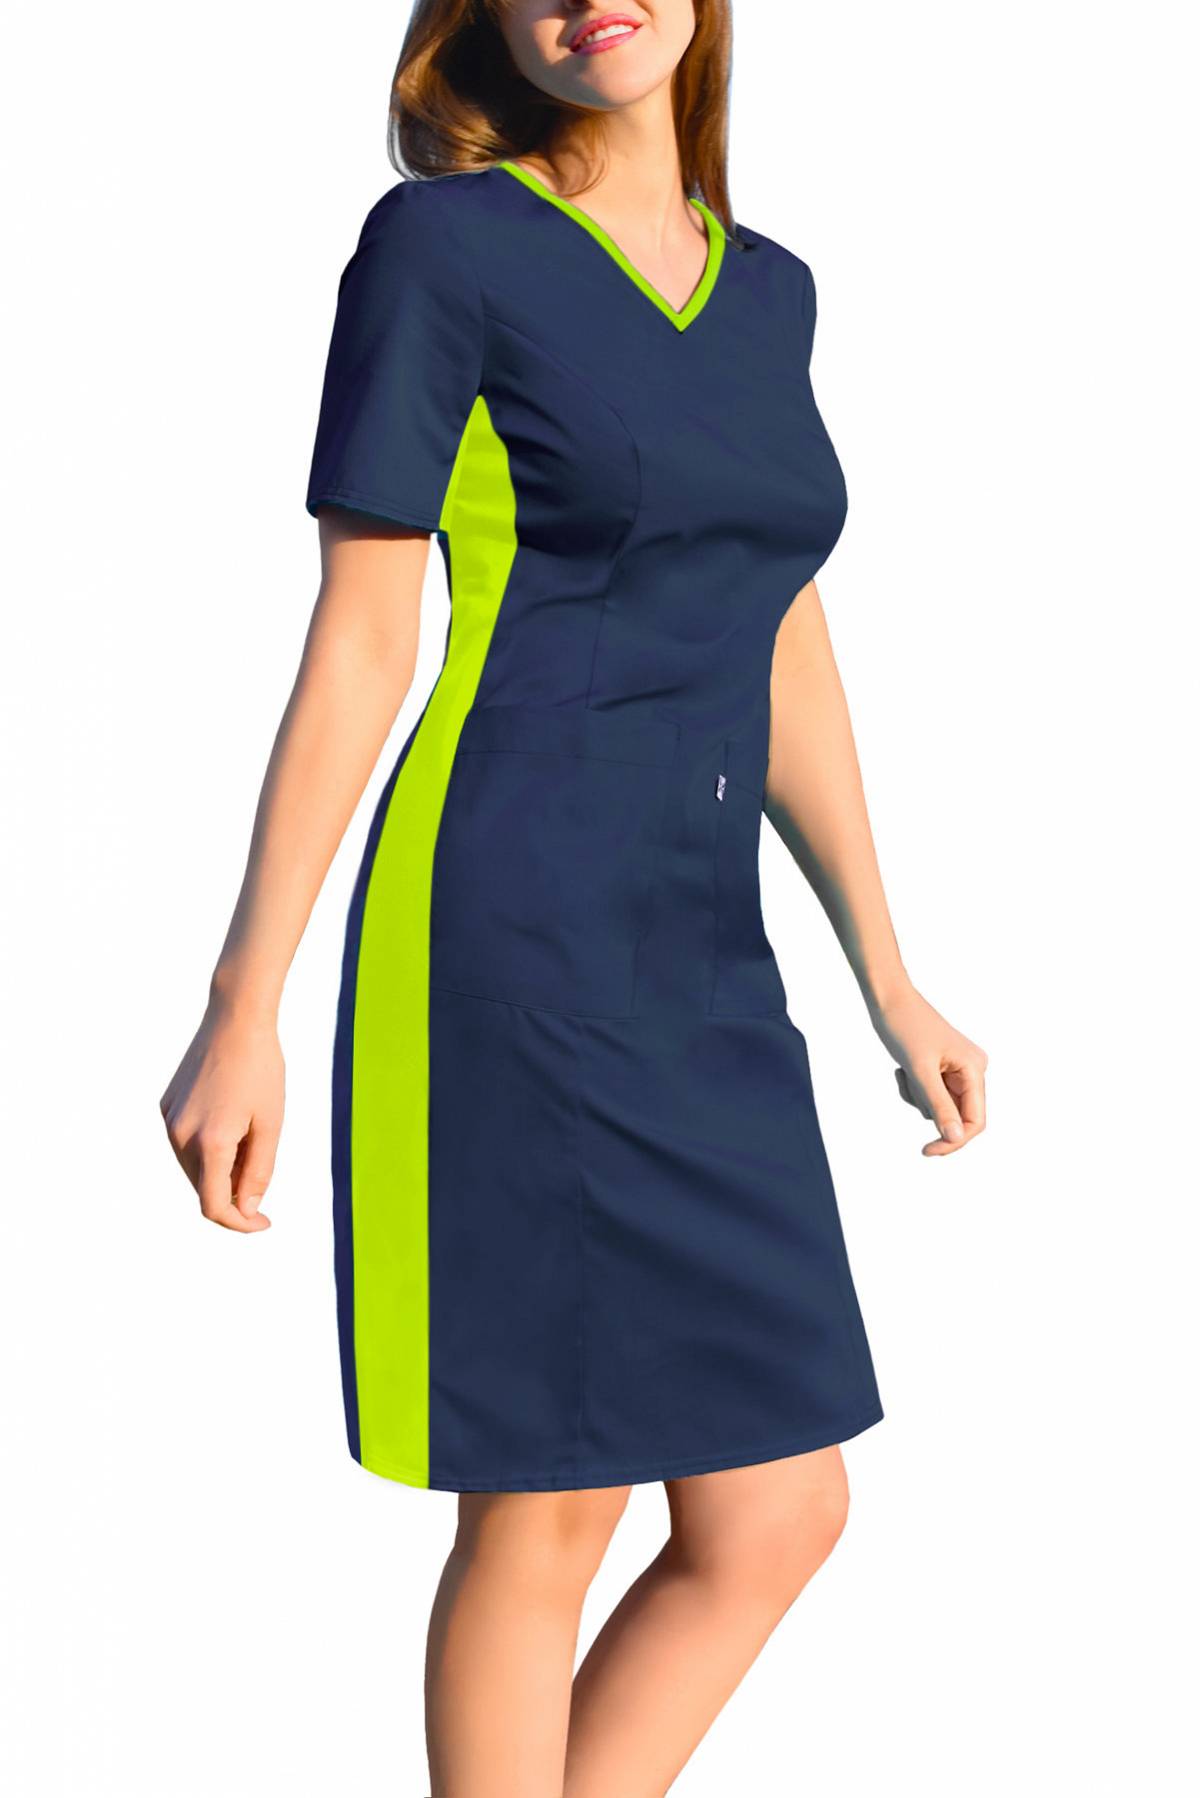 Sukienka medyczna, z elastycznym ściągaczem w boku, granat-limonka (SKE1-G/L)